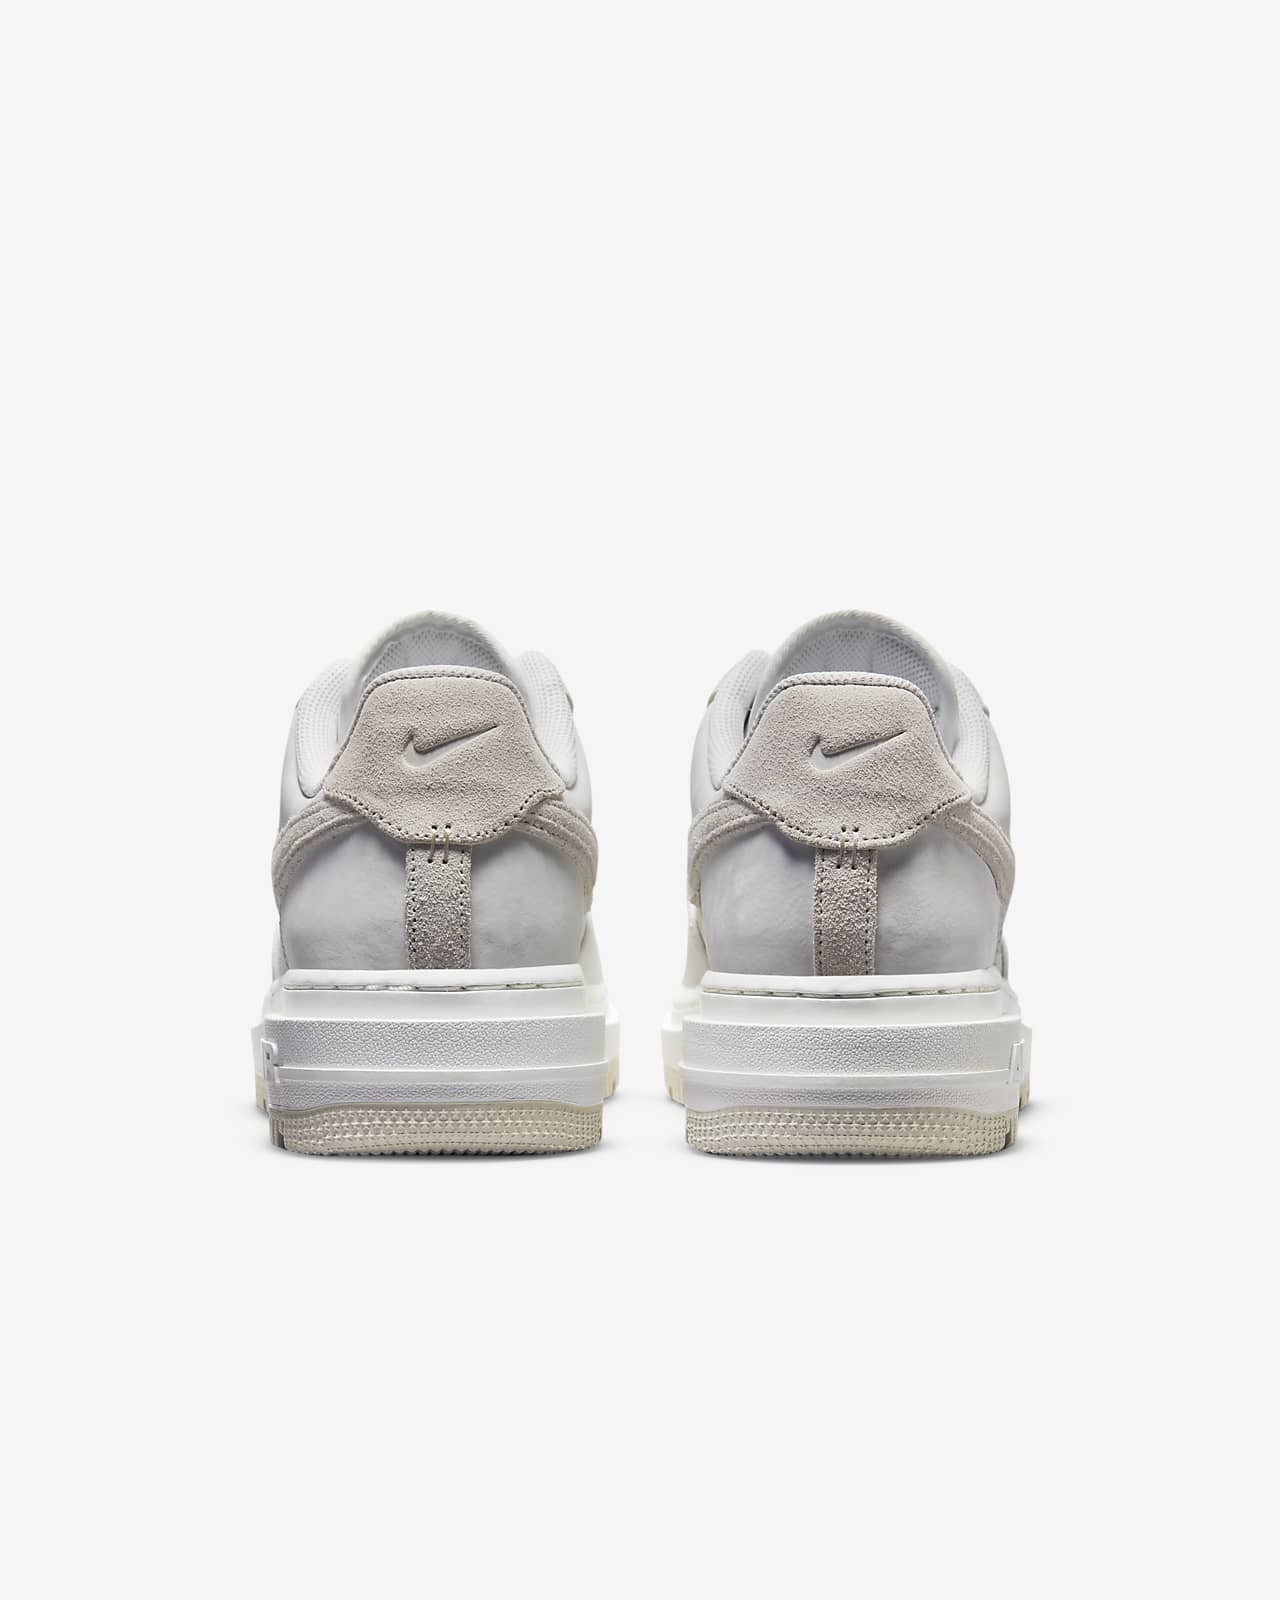 Nike Air Force 1 High Sculpt Summit White Silver – Lilac Blonde